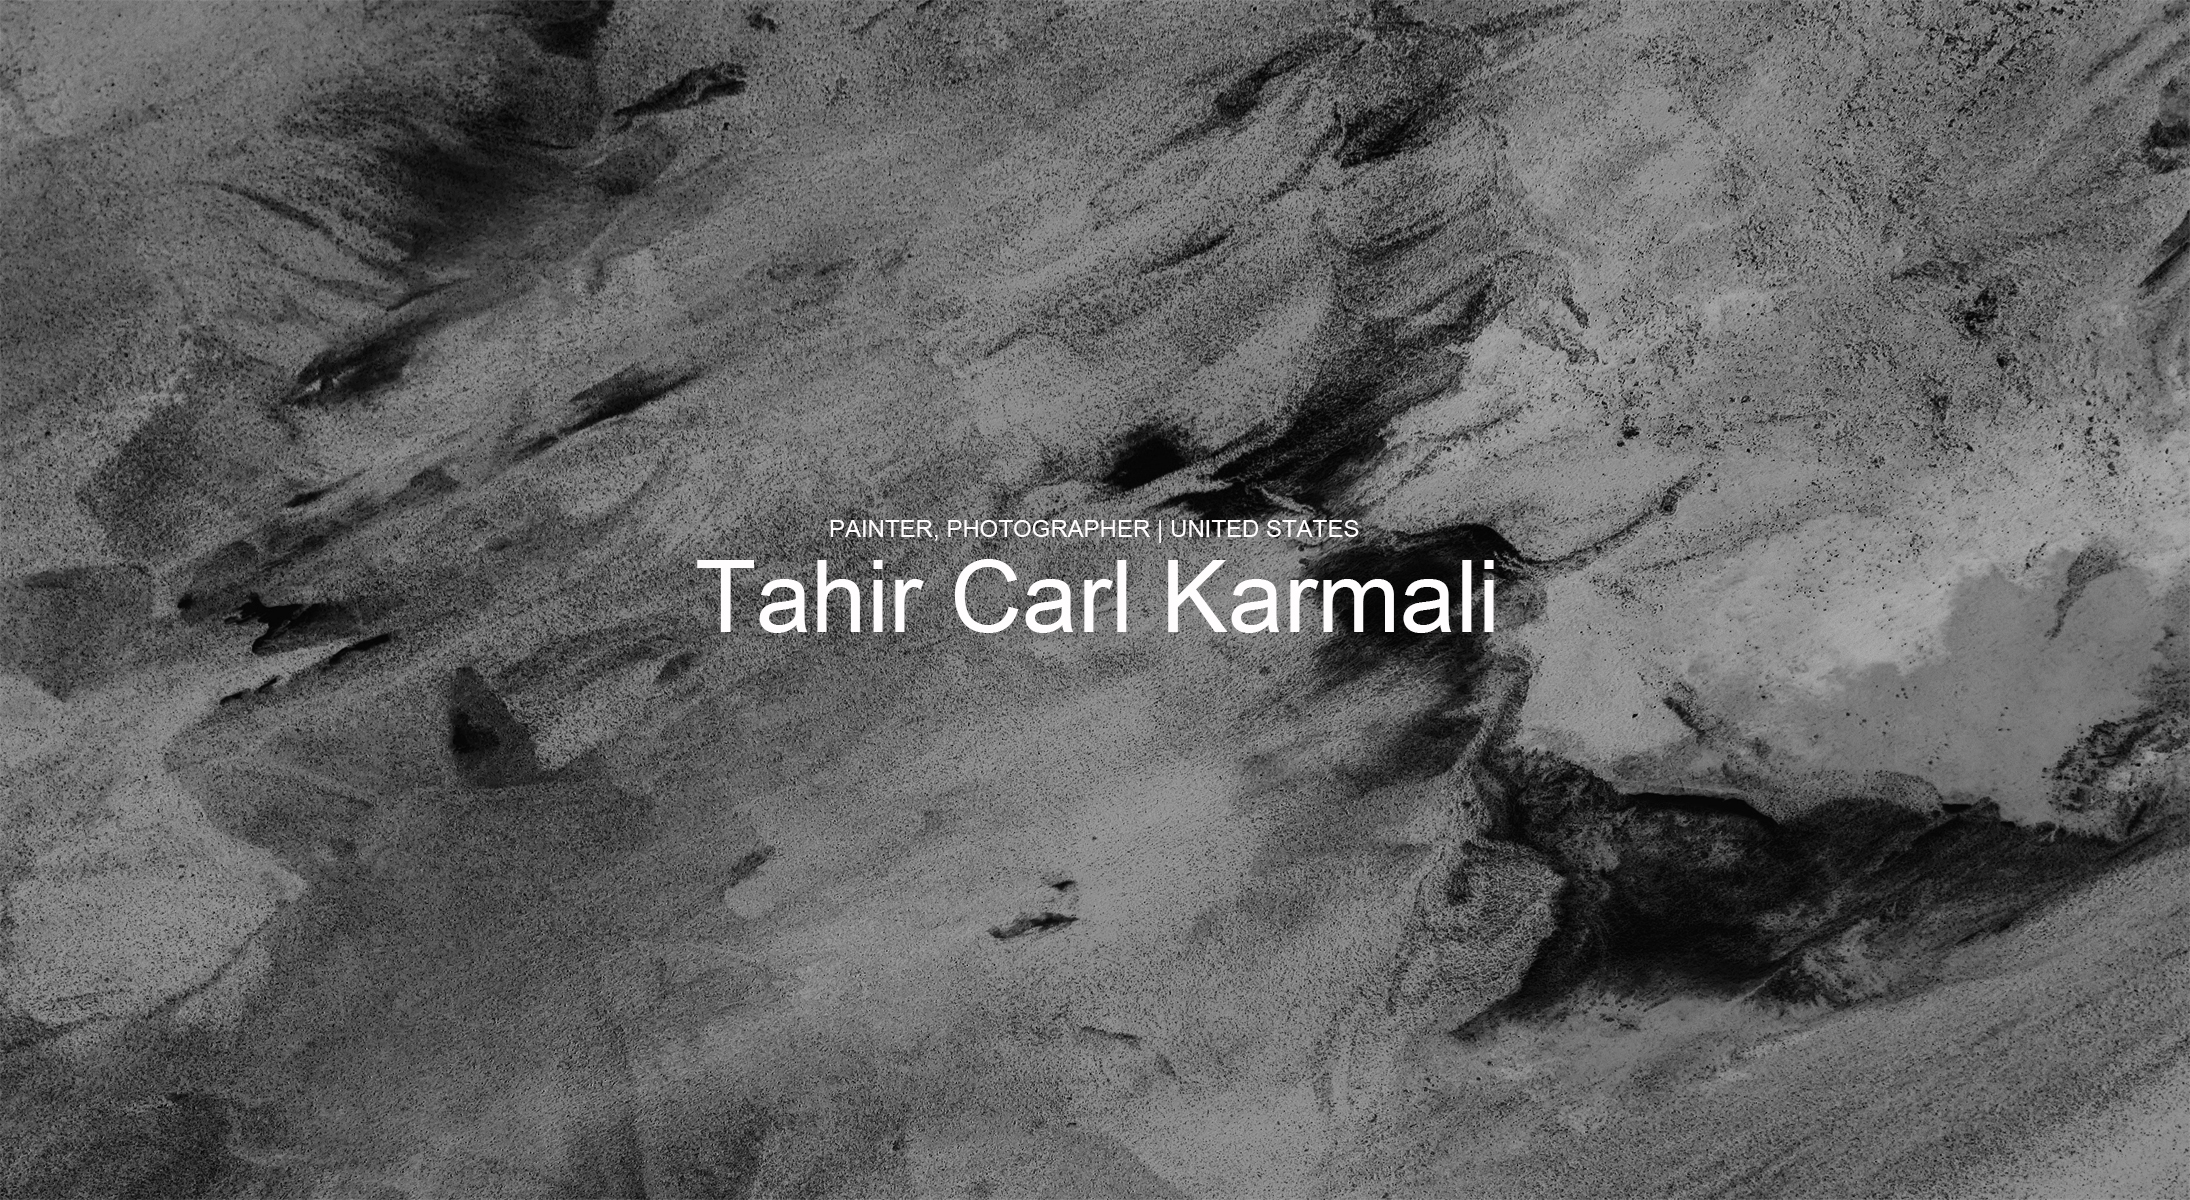 Tahir Carl Karmali